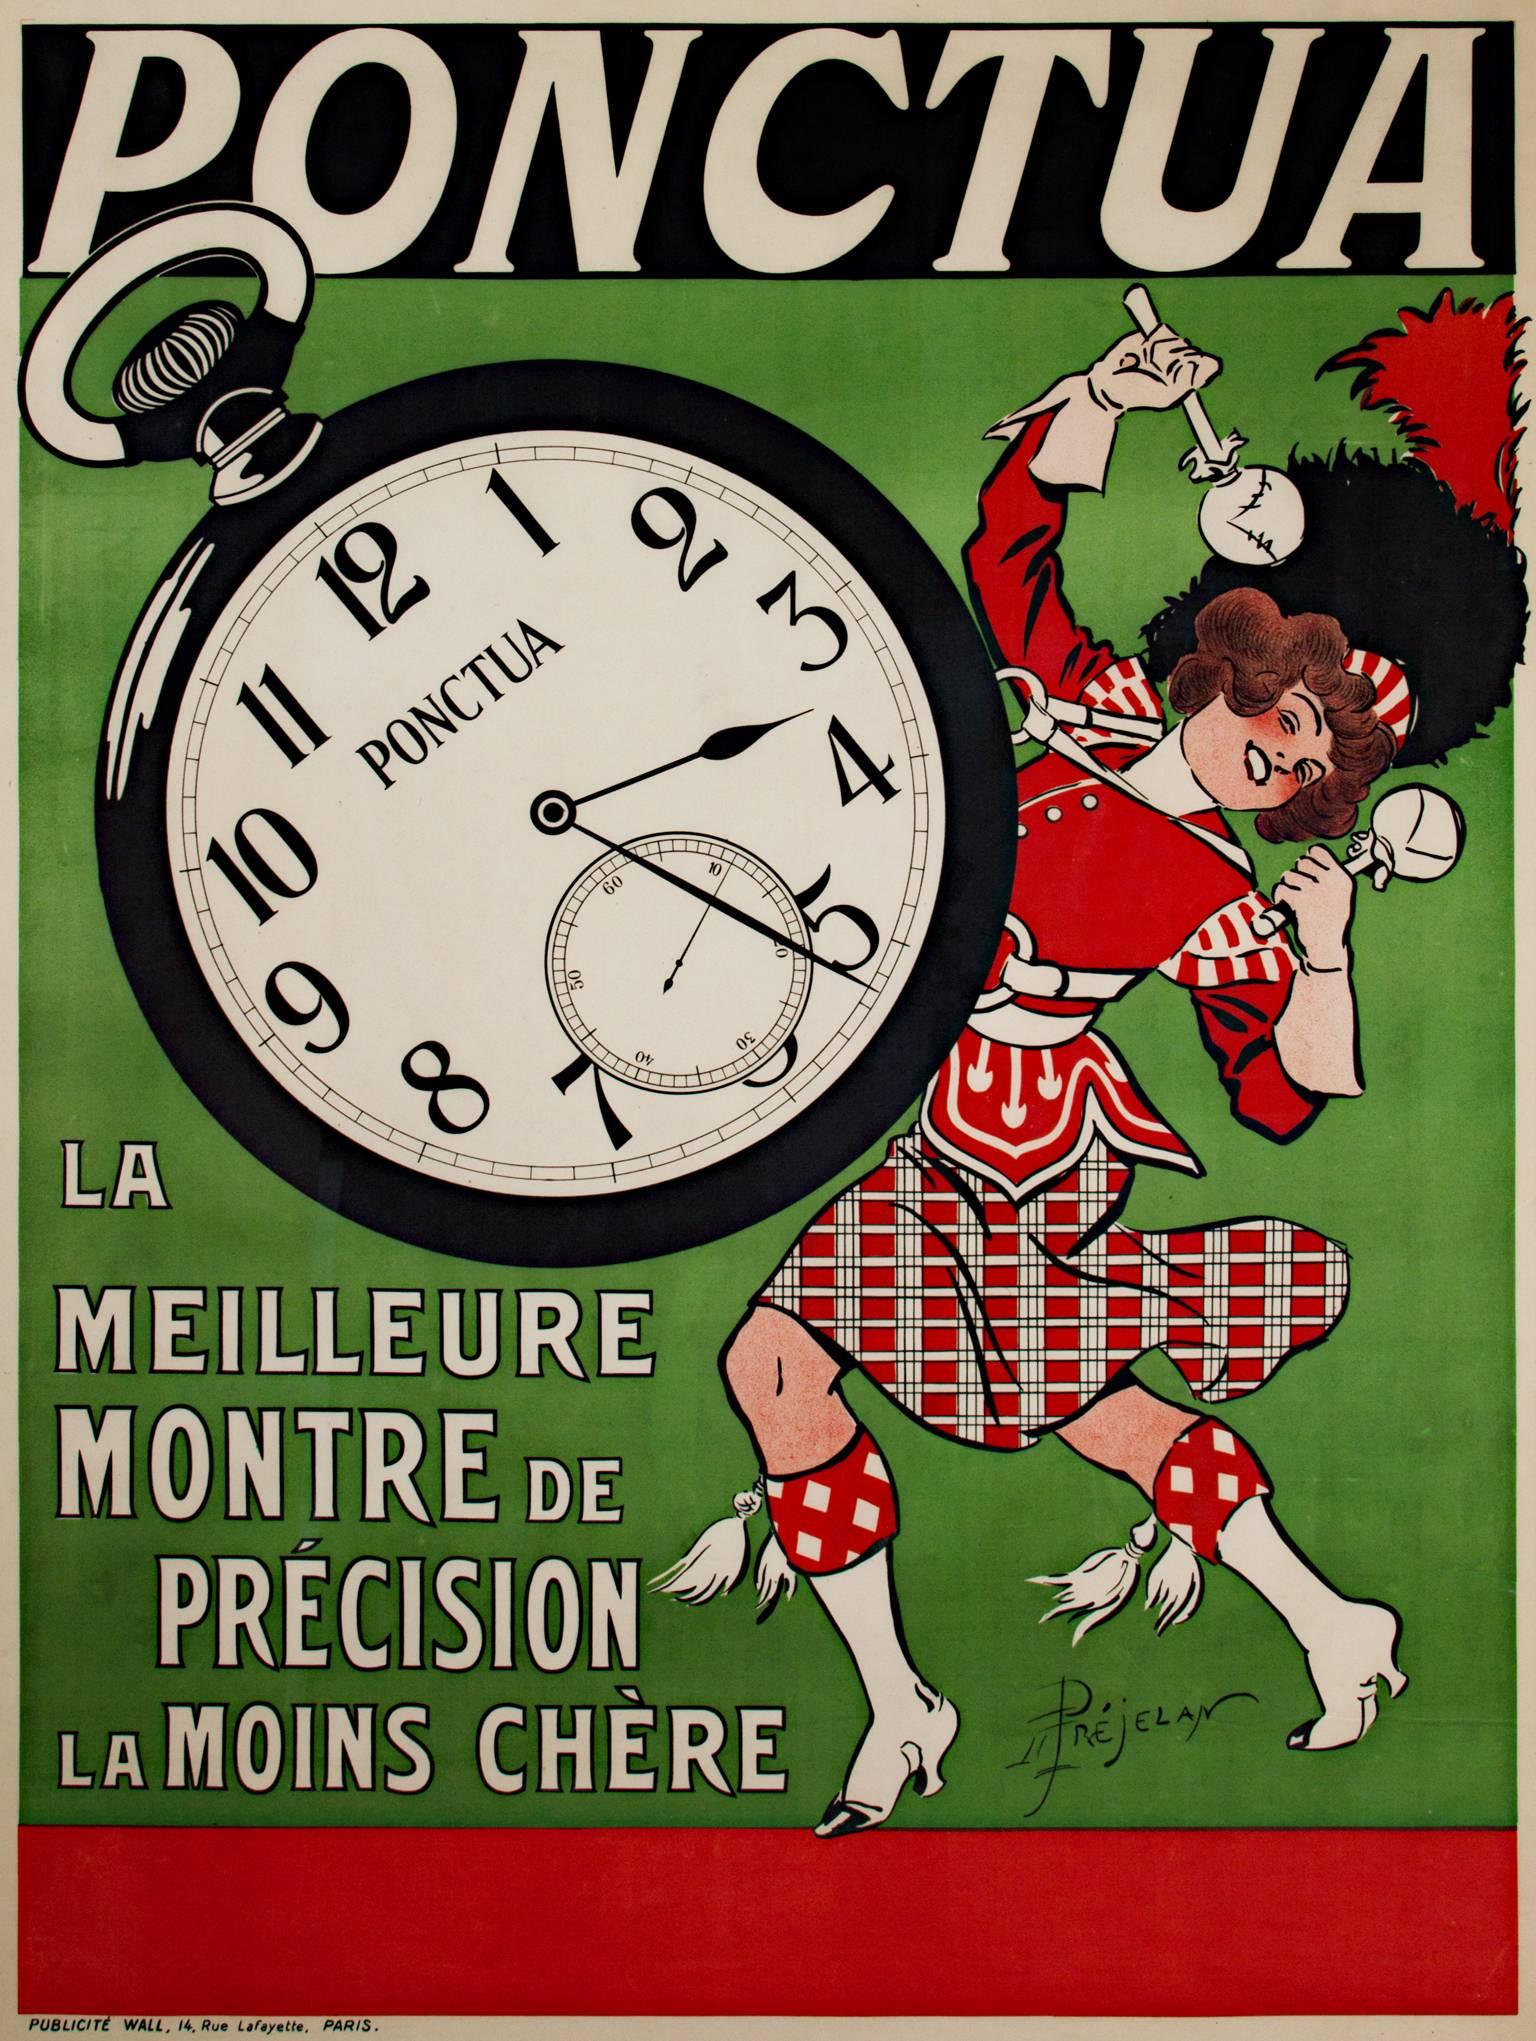 Original-Farblithografie-Plakat von Rene Prejelan.

Ponctua (Die beste und billigste Präzisionsuhr), 1910.
Eine schöne Uhr zu einem schönen Preis - und die schottische Trommelmajorette scheint begeistert zu sein.
La belle epoque art nouveau